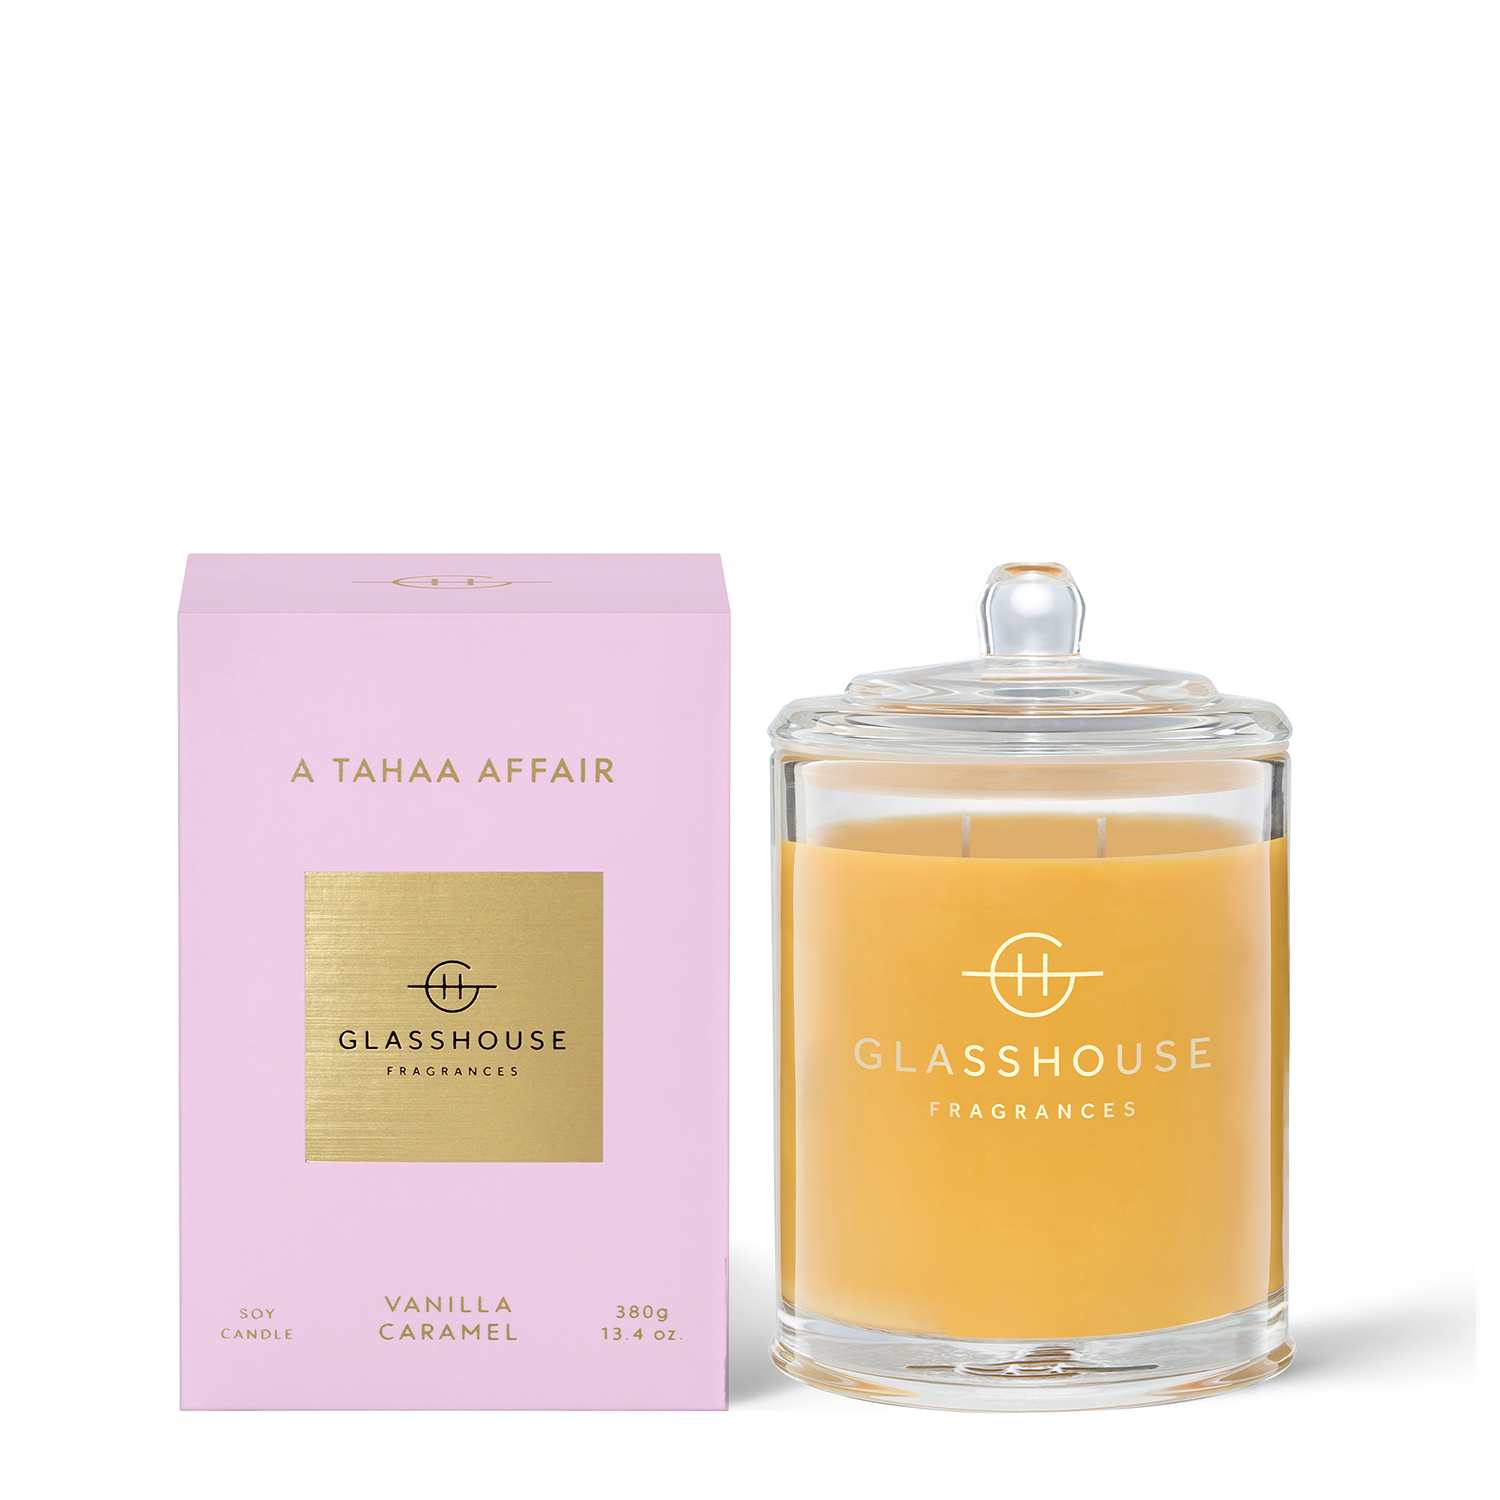 Glasshouse Fragrances - A Tahaa Affair Candle / 13 oz